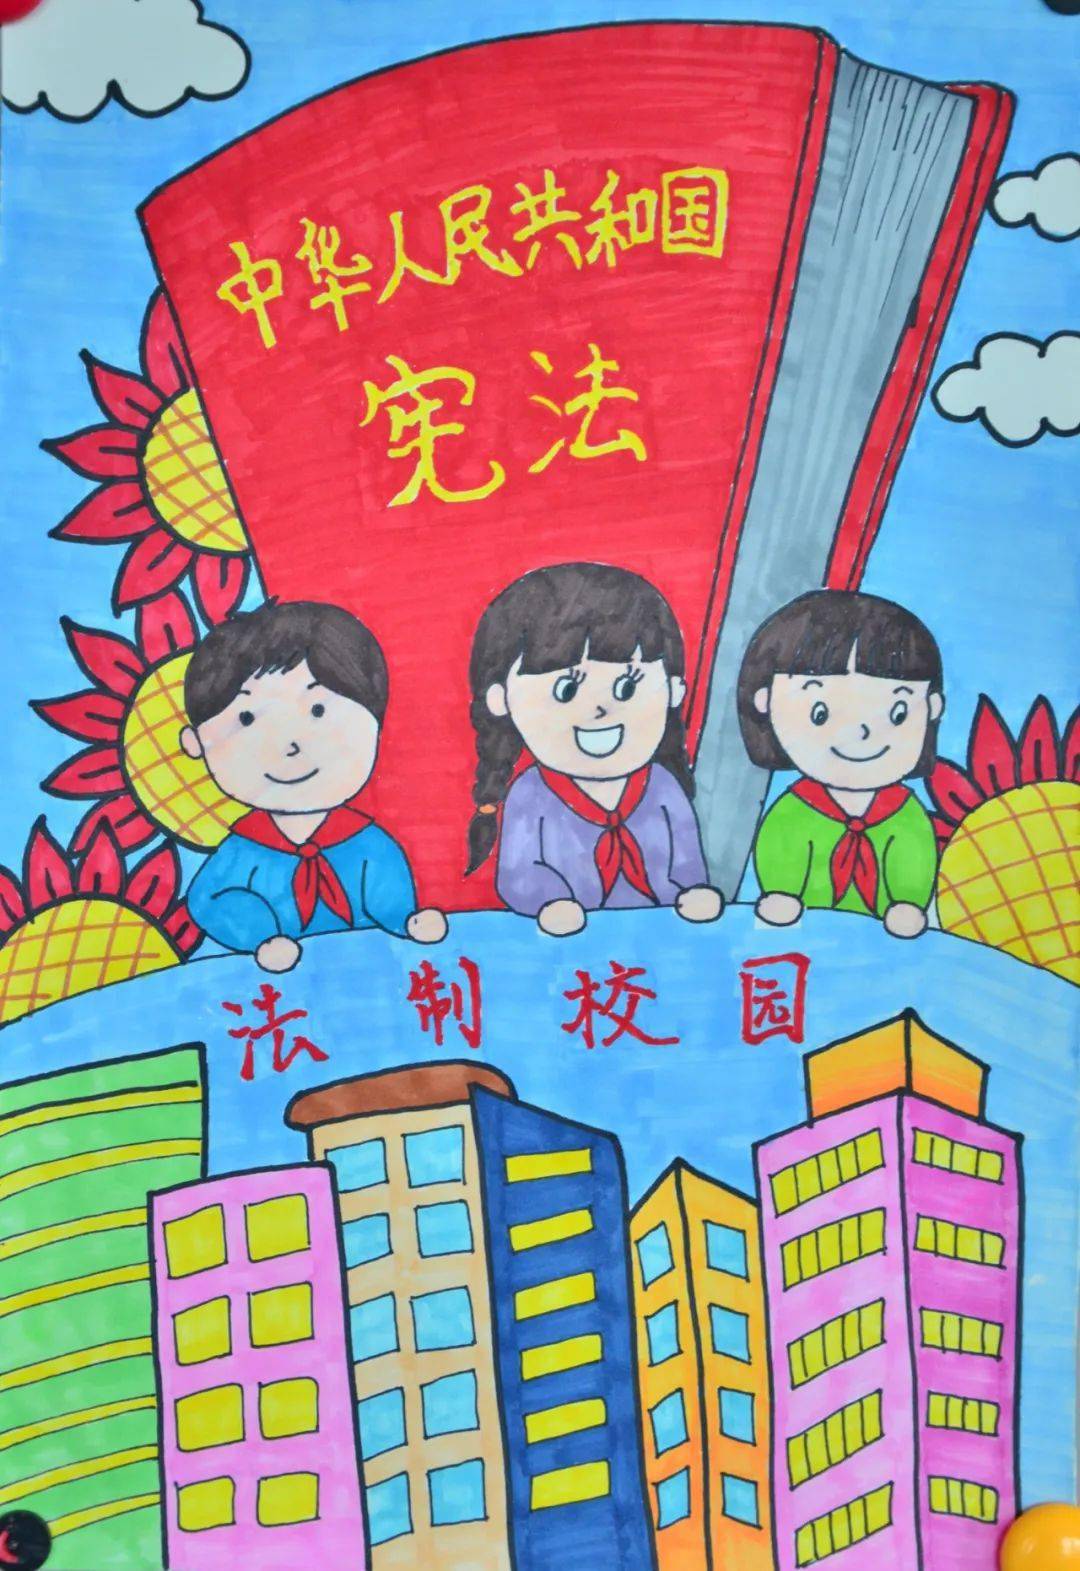 科尔沁区中小学生"复苗工程"绘画大赛获奖作品展